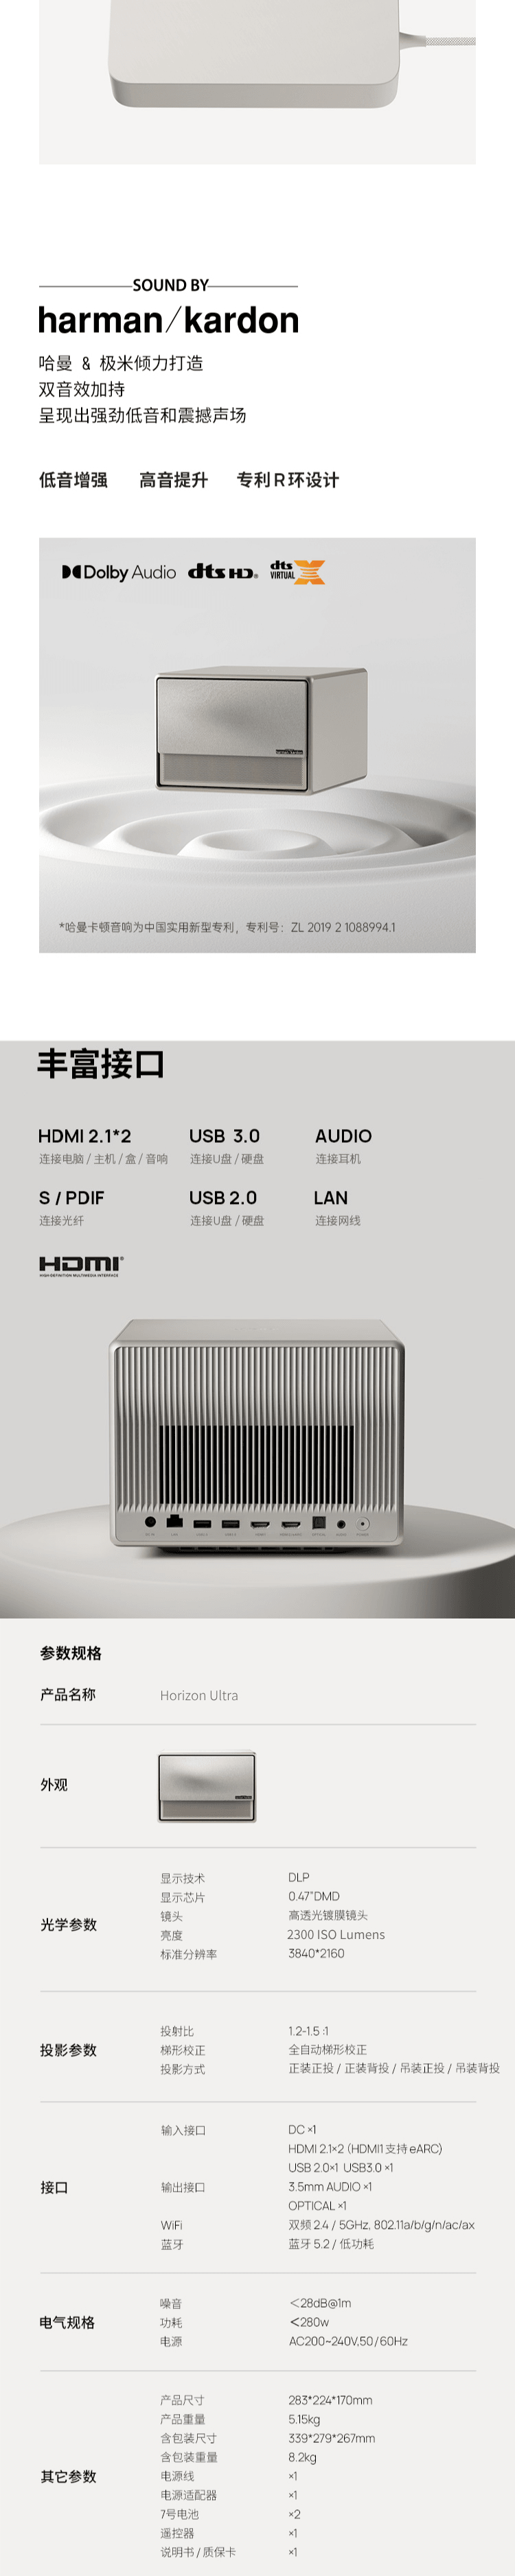 【现货直发】中国极米Horizon Ultra 无损光学4K变焦超高清家用智能投影仪 2300 ISO lumens【加拿大直邮】